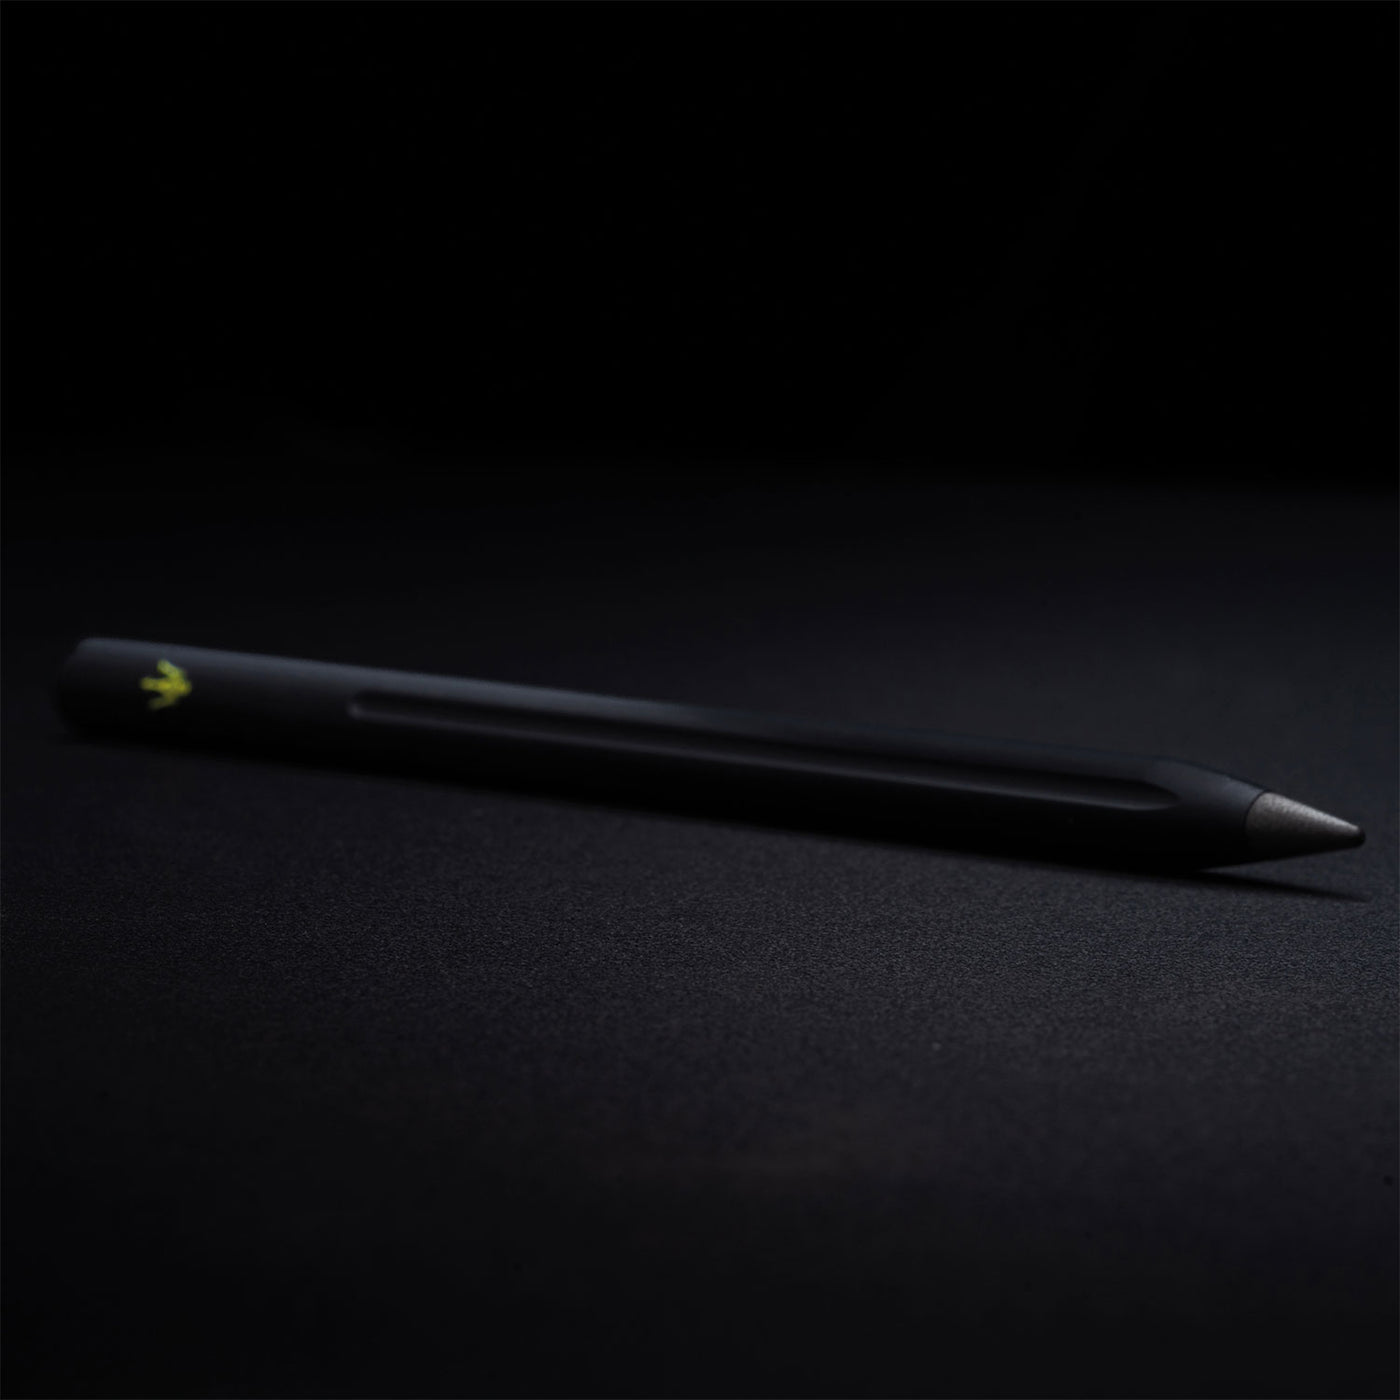 Pininfarina Segno Smart Maserati Edition Pencil - Black 7